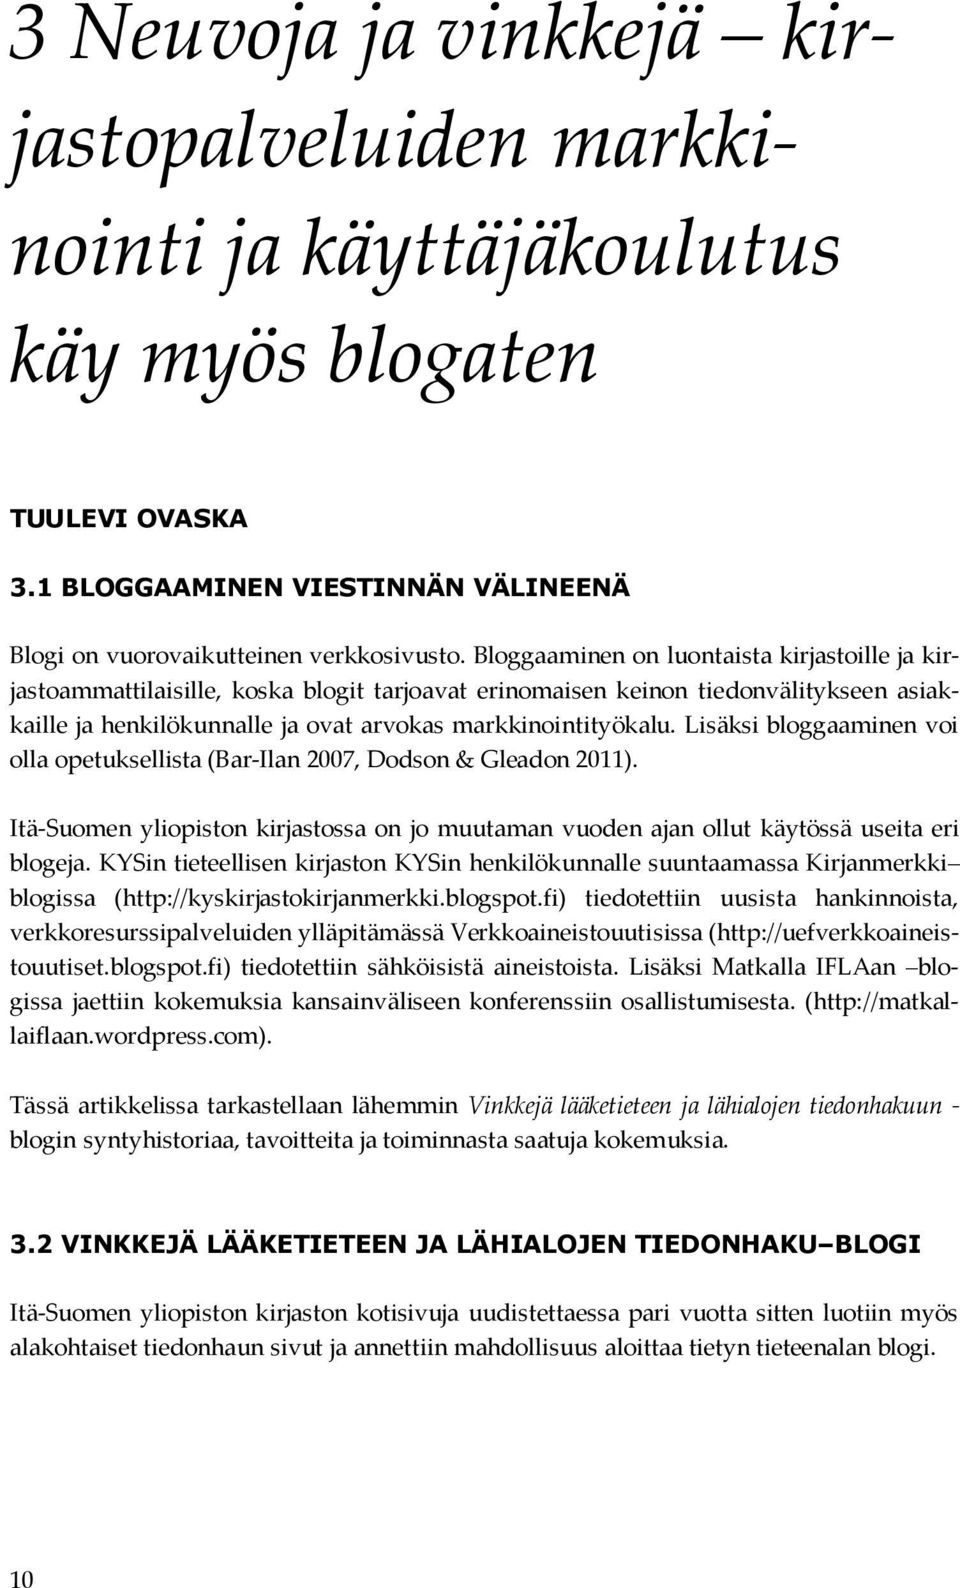 Lisäksi bloggaaminen voi olla opetuksellista (Bar-Ilan 2007, Dodson & Gleadon 2011). Itä-Suomen yliopiston kirjastossa on jo muutaman vuoden ajan ollut käytössä useita eri blogeja.